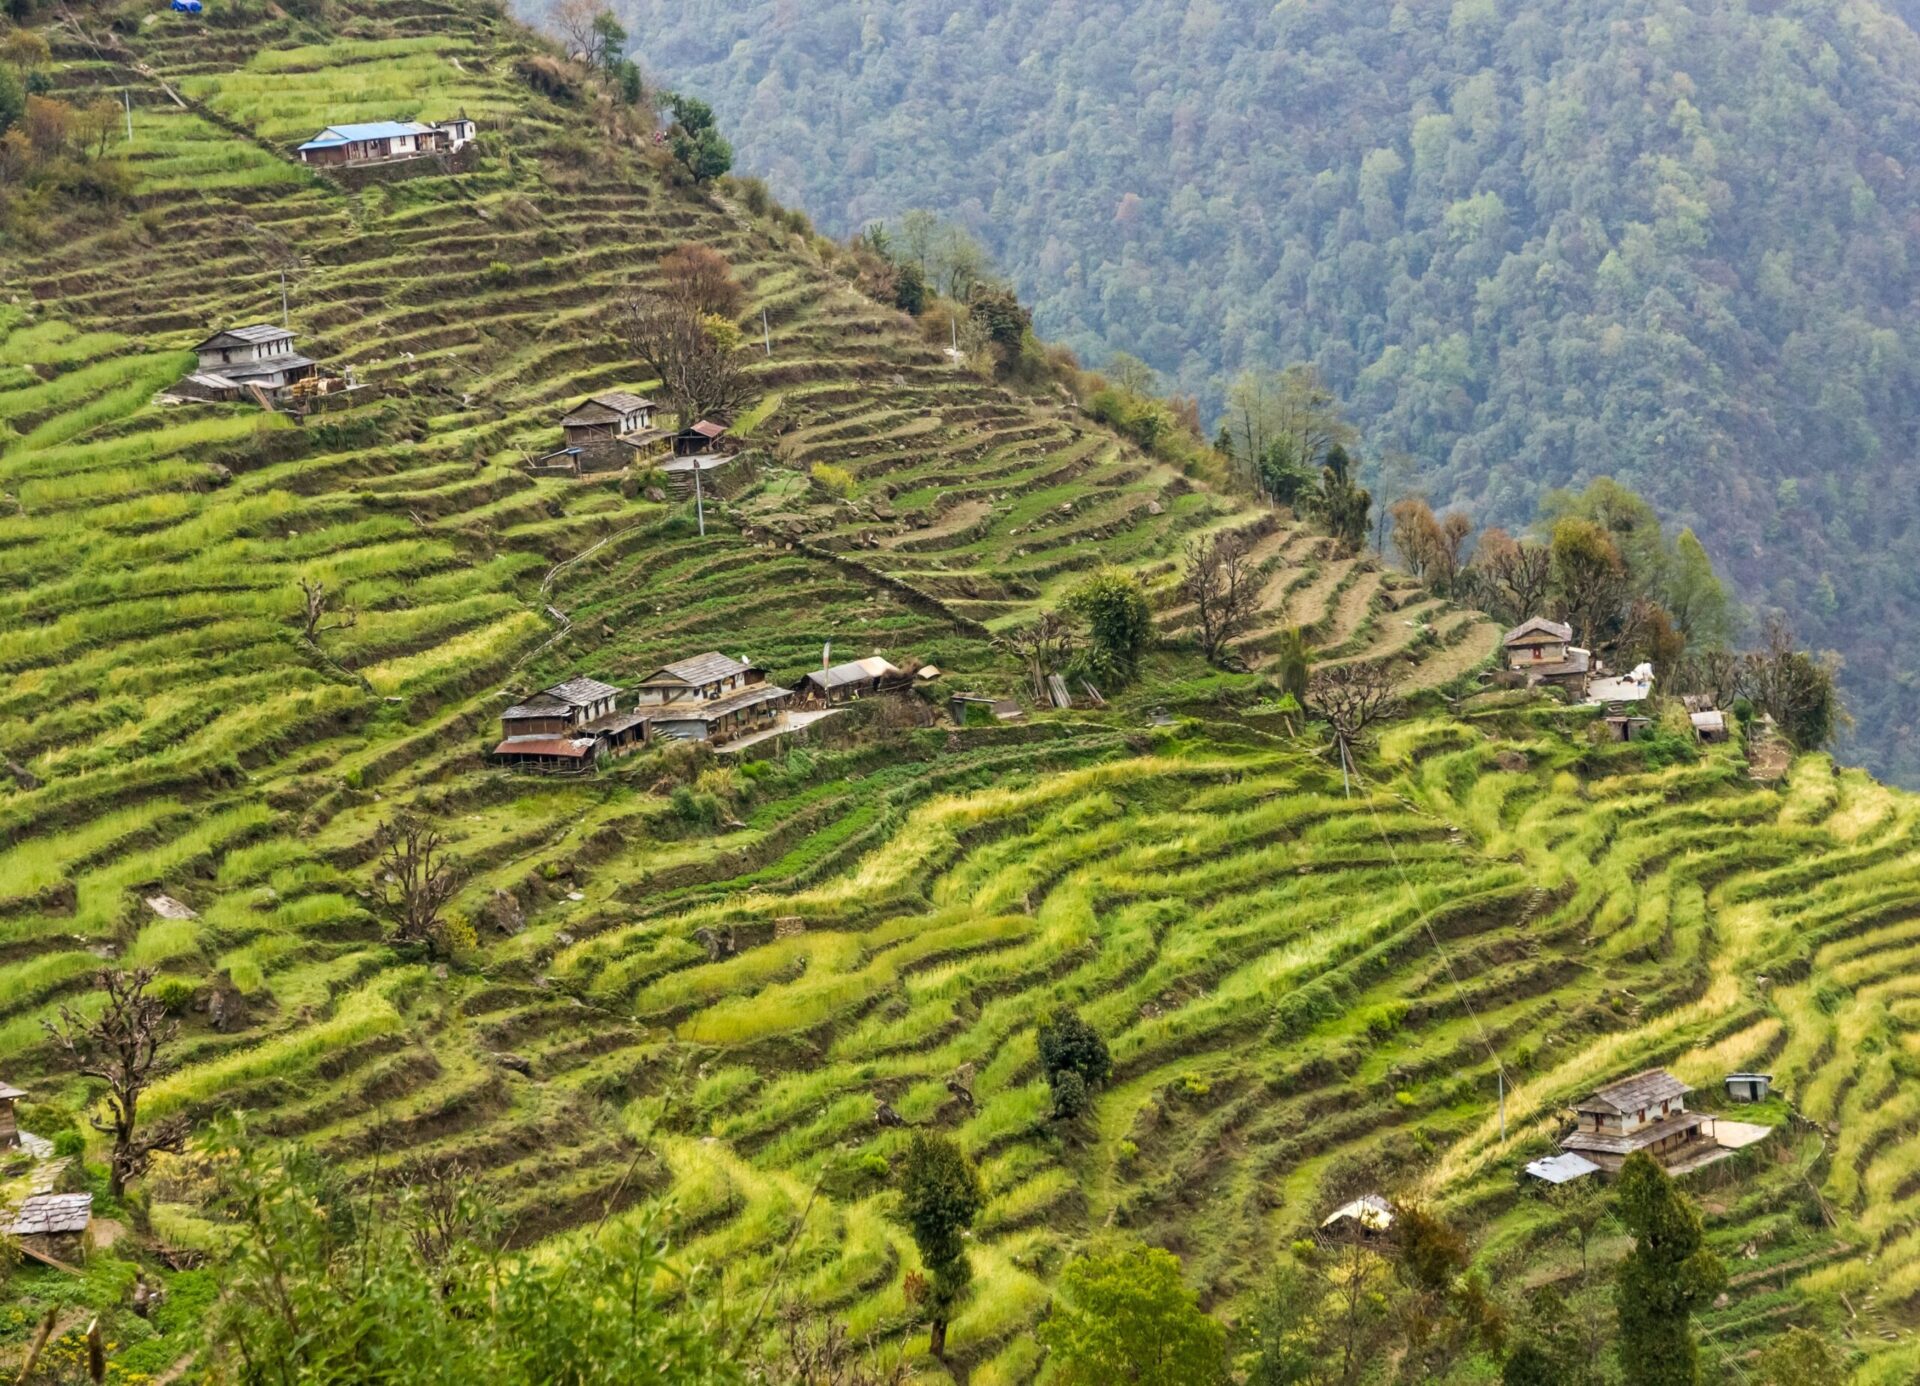 terraced mountain rice fields